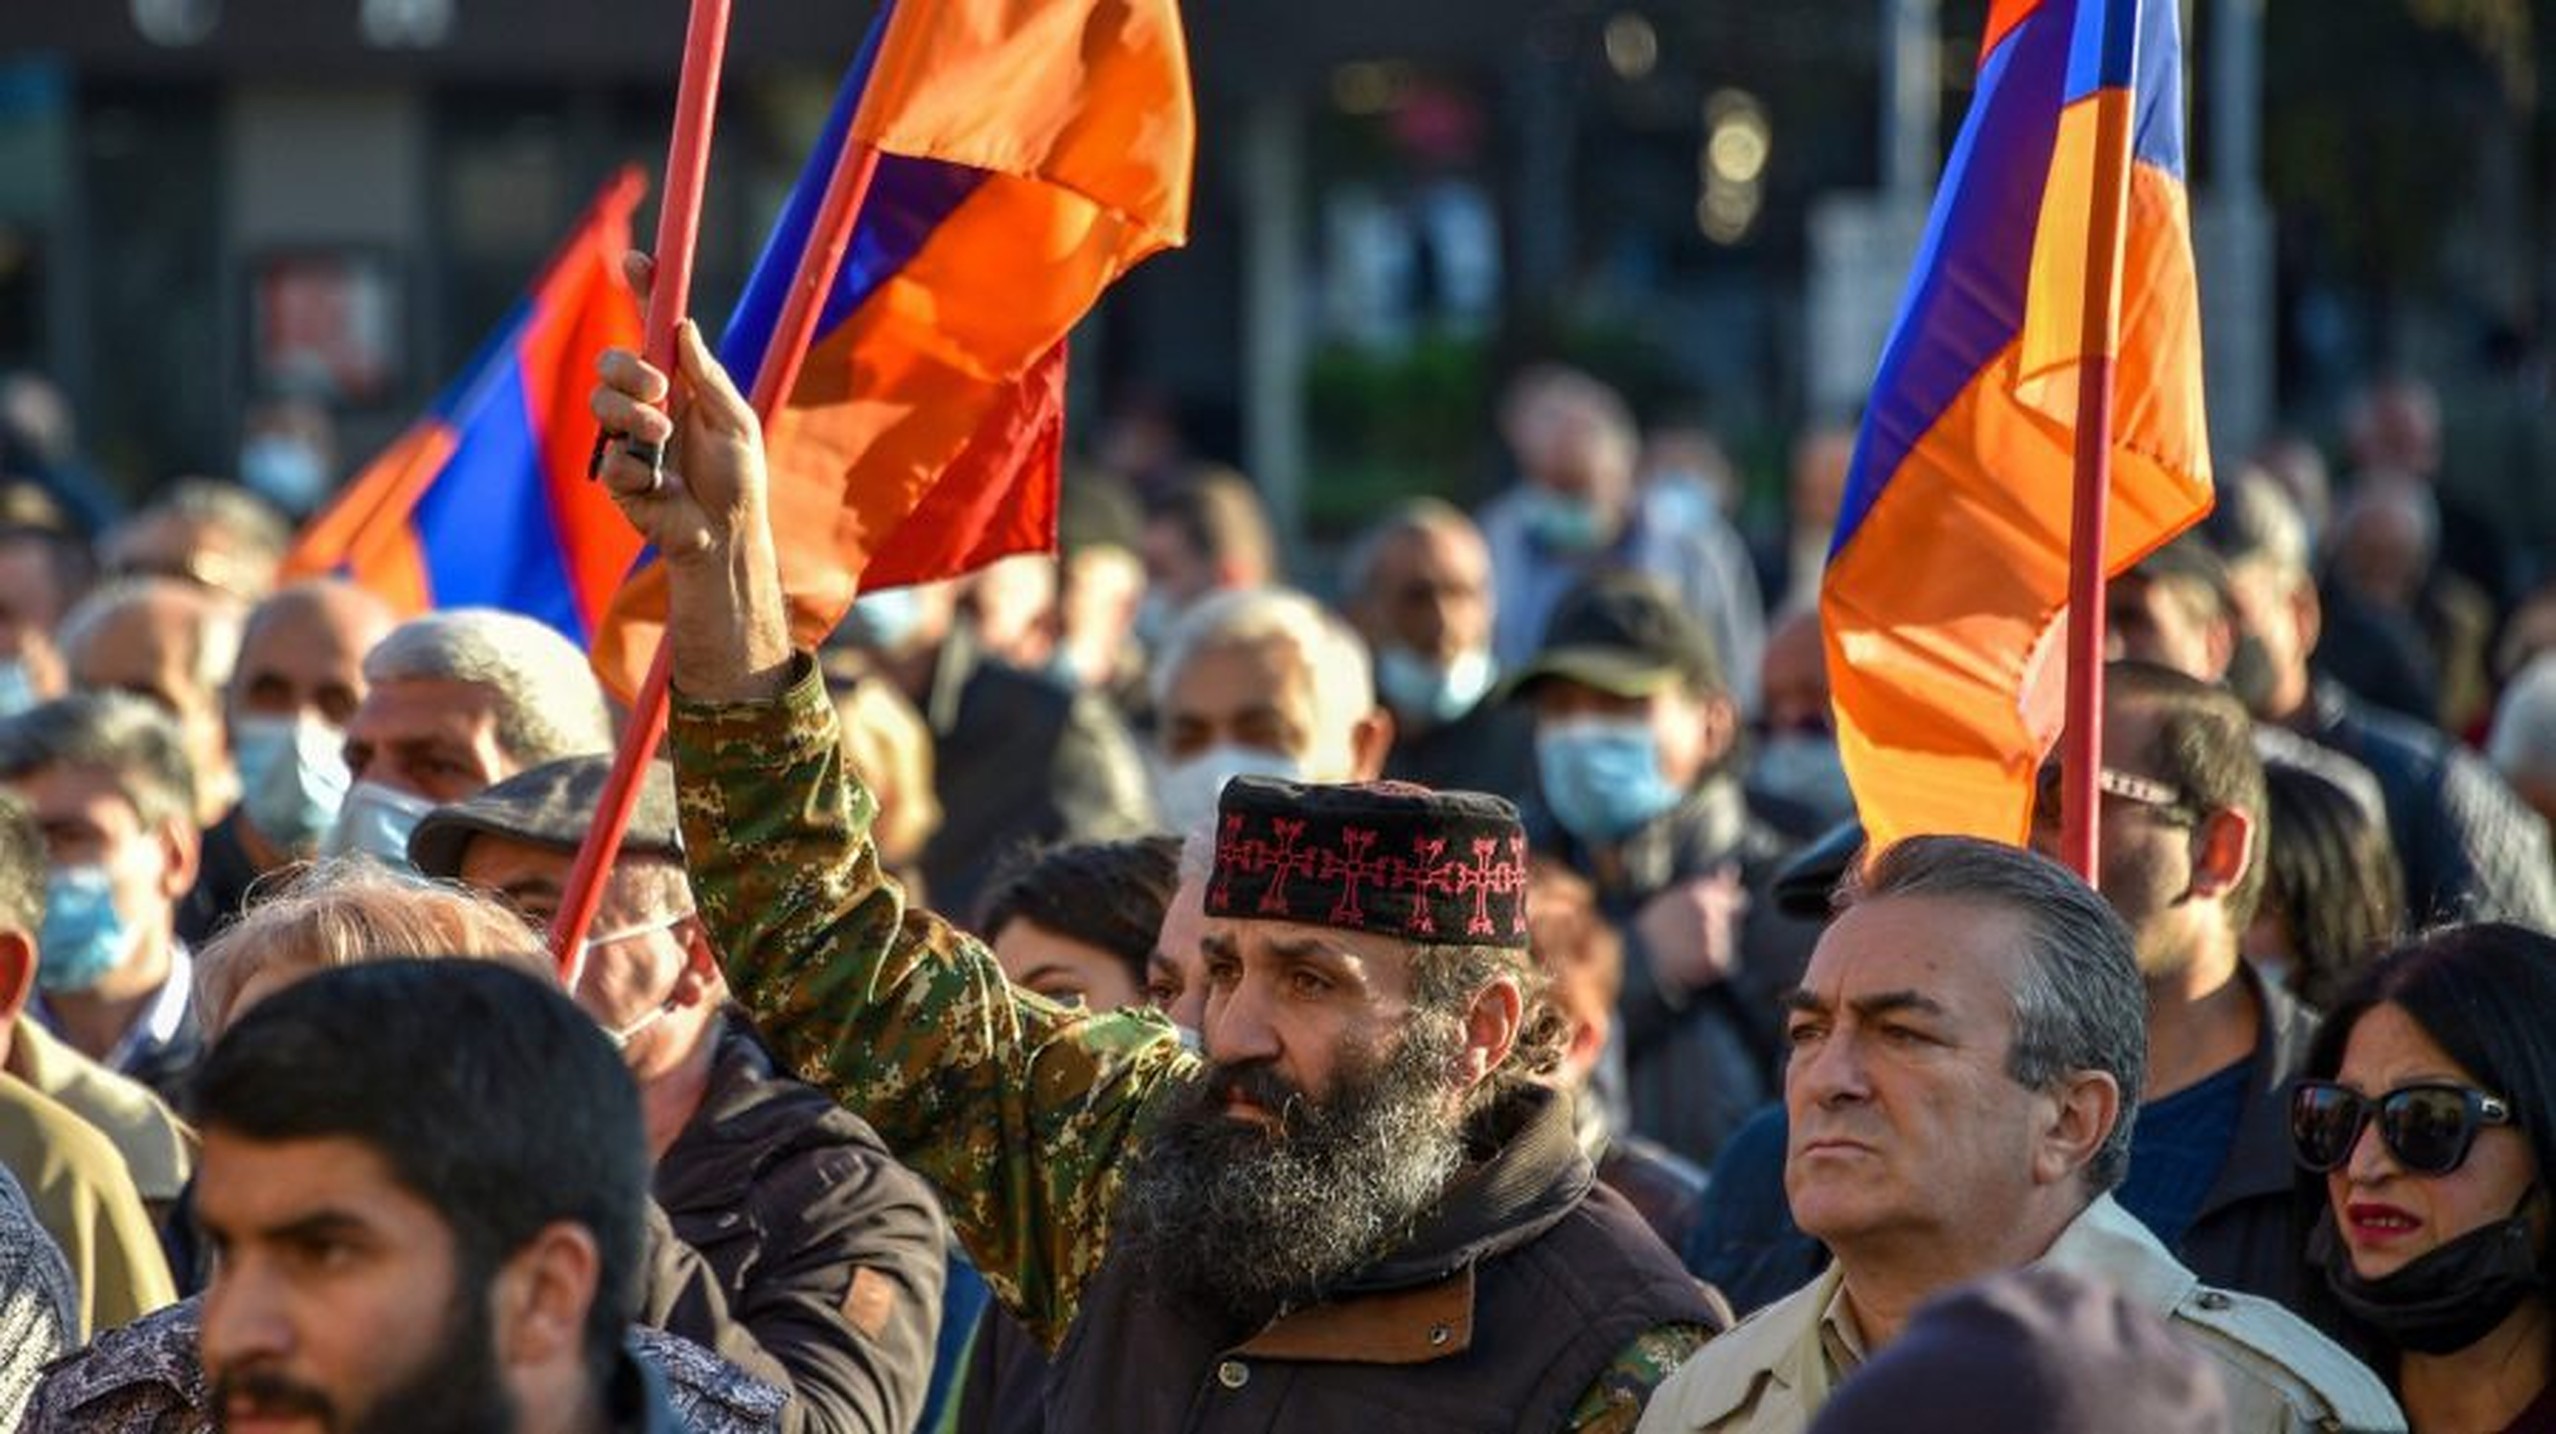 Continuă protestele la Erevan. Se cere demisia premierului